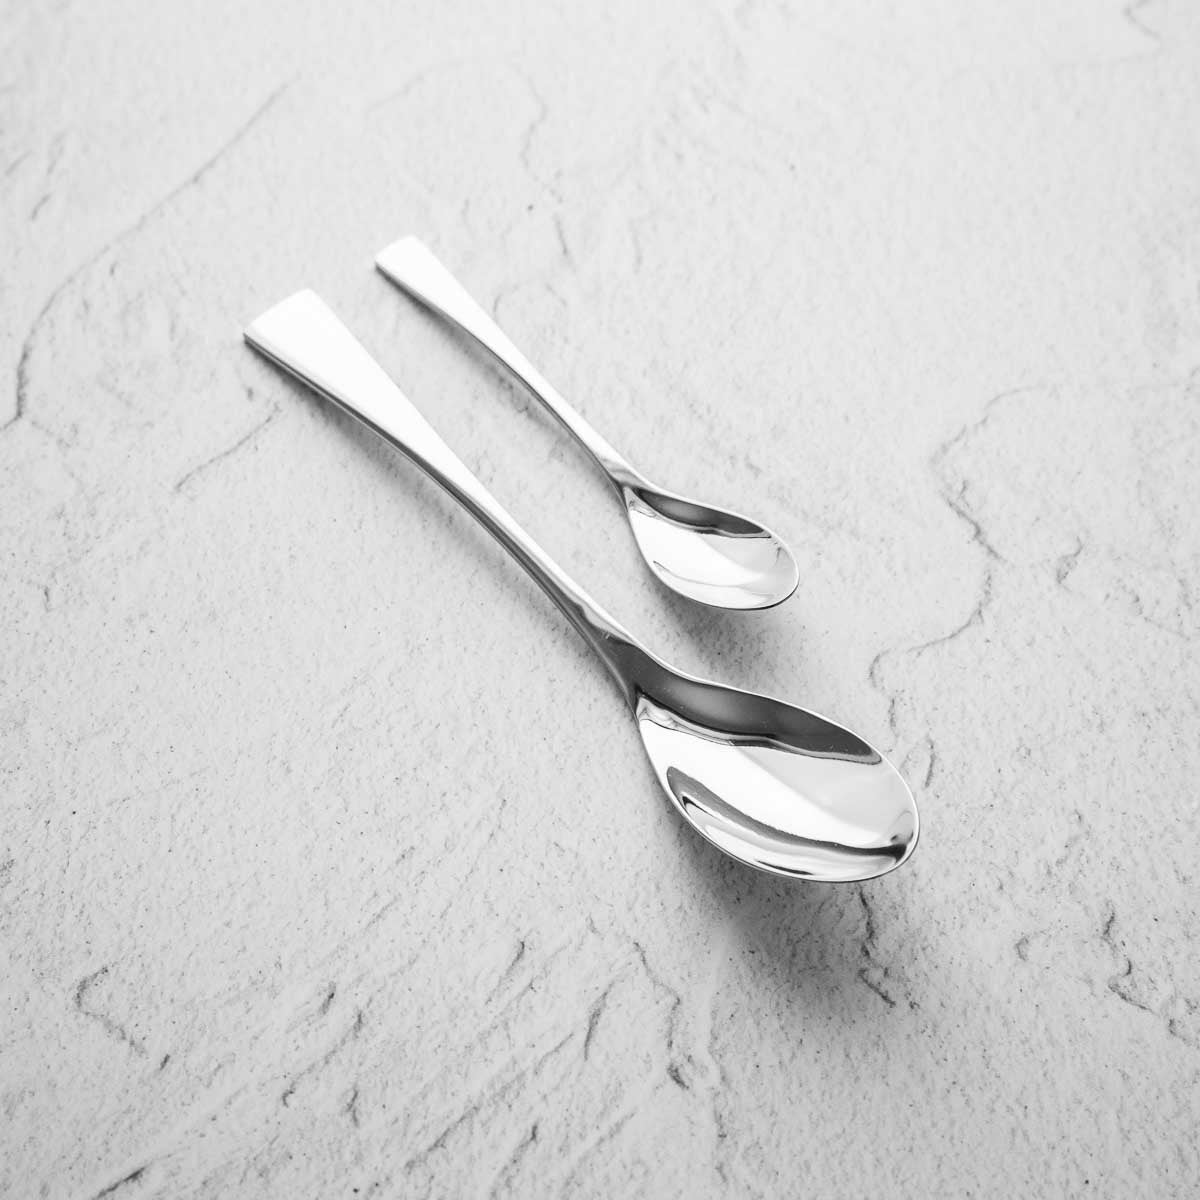 Green Quenelle Spoon XL [19 cm.] - Cutboy Knife